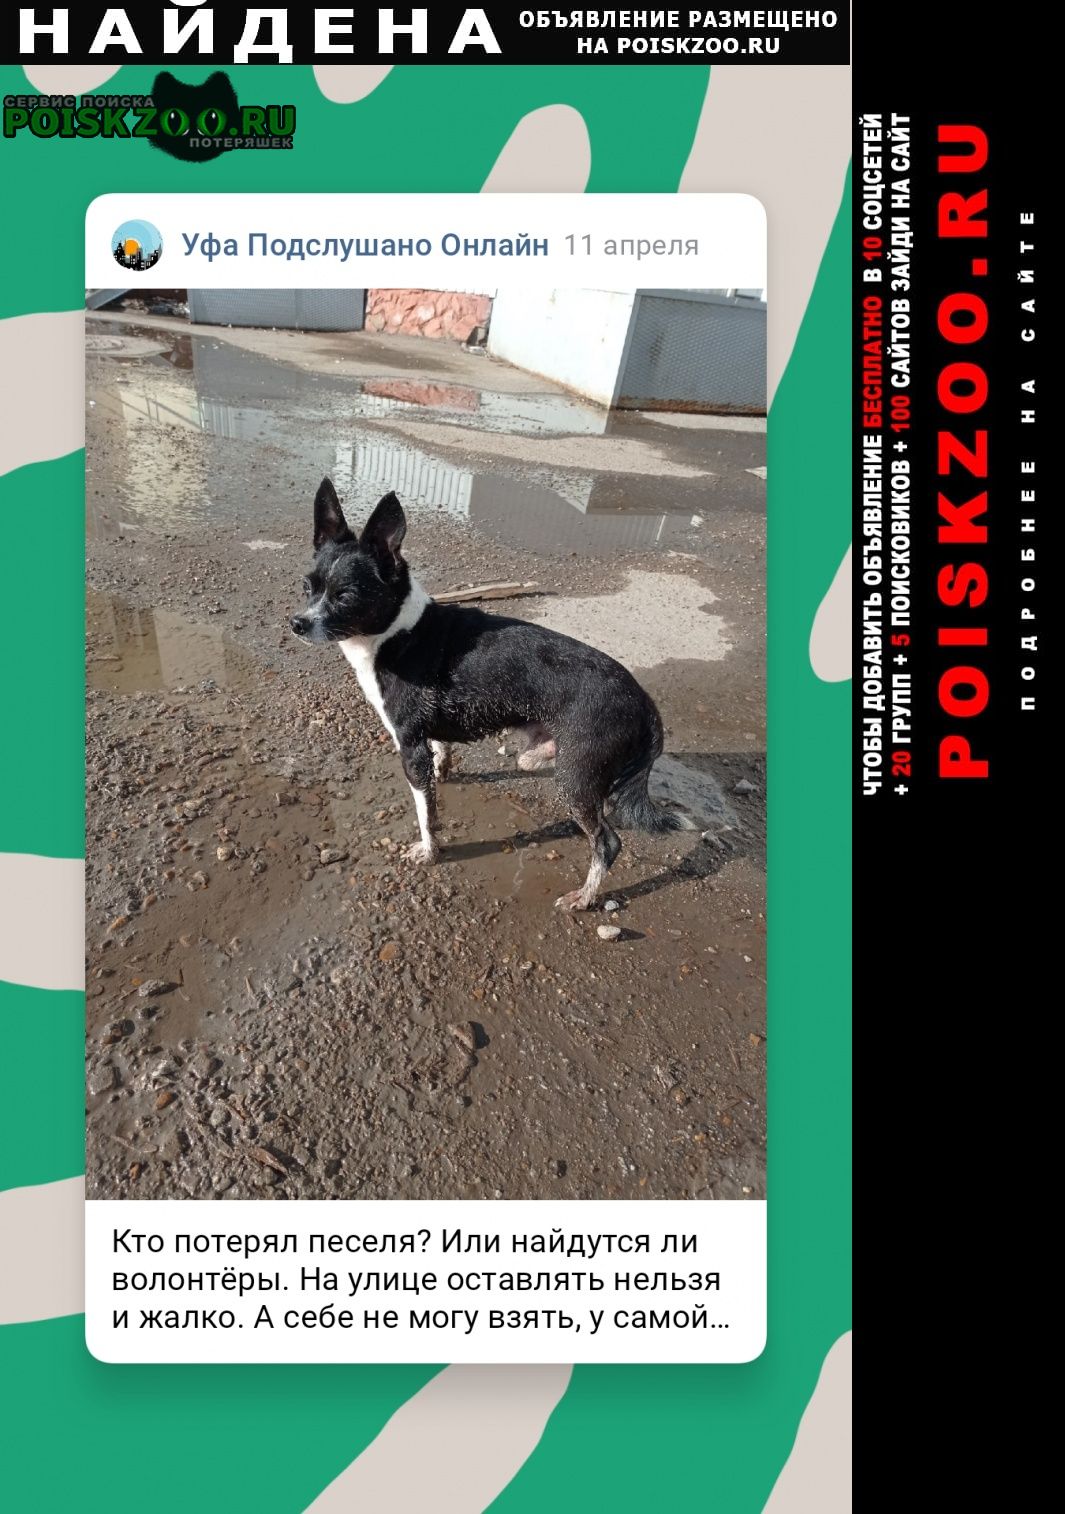 Найдена собака кобель найдёт в районе ваза Уфа